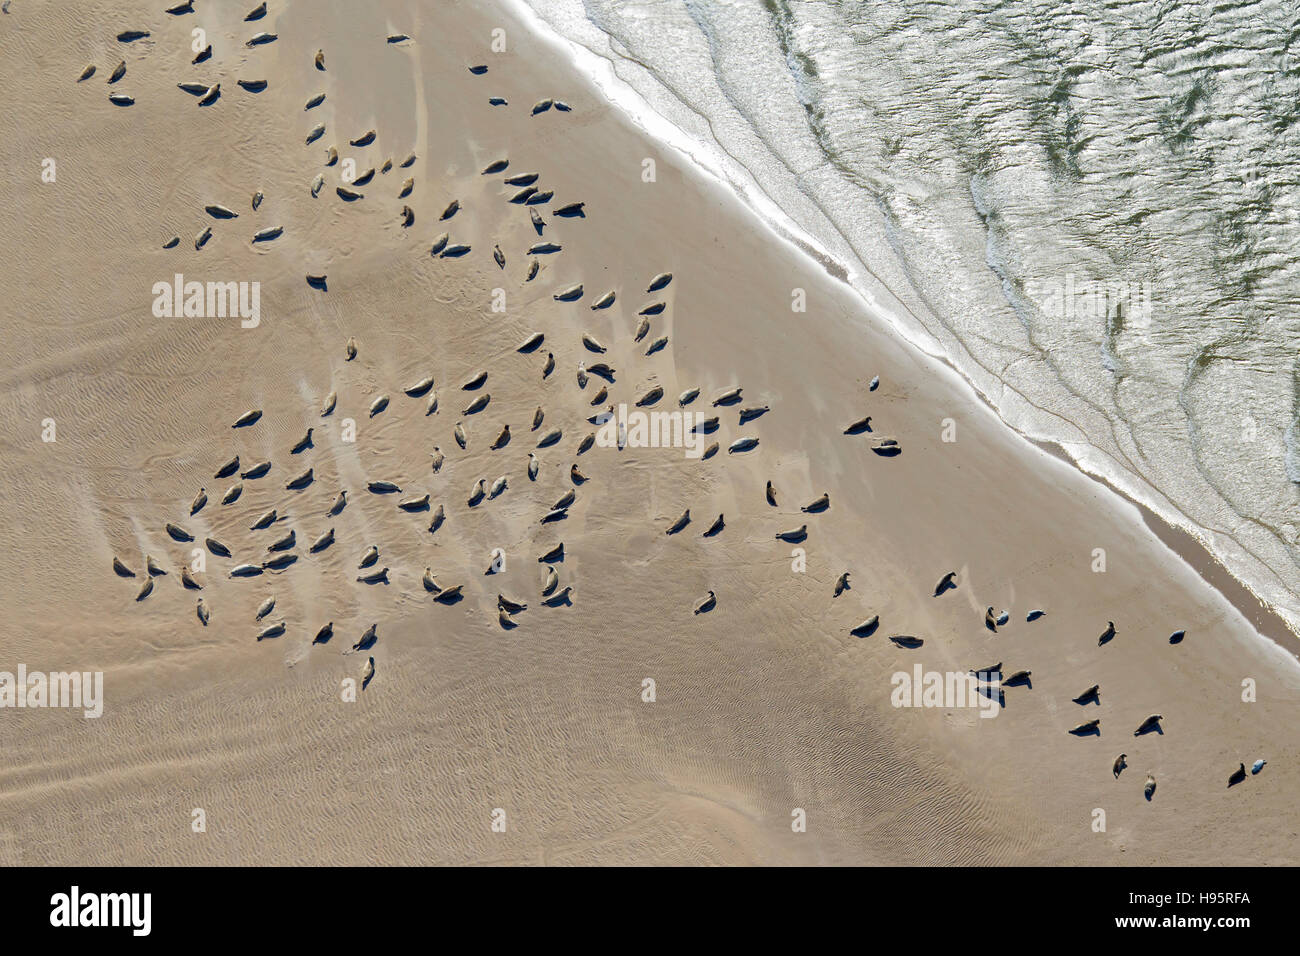 Vue à vol d'oiseau de phoques communs / le phoque commun (Phoca vitulina) dans une colonie de phoques se reposant sur banc de sable le long de la côte de la mer du Nord Banque D'Images